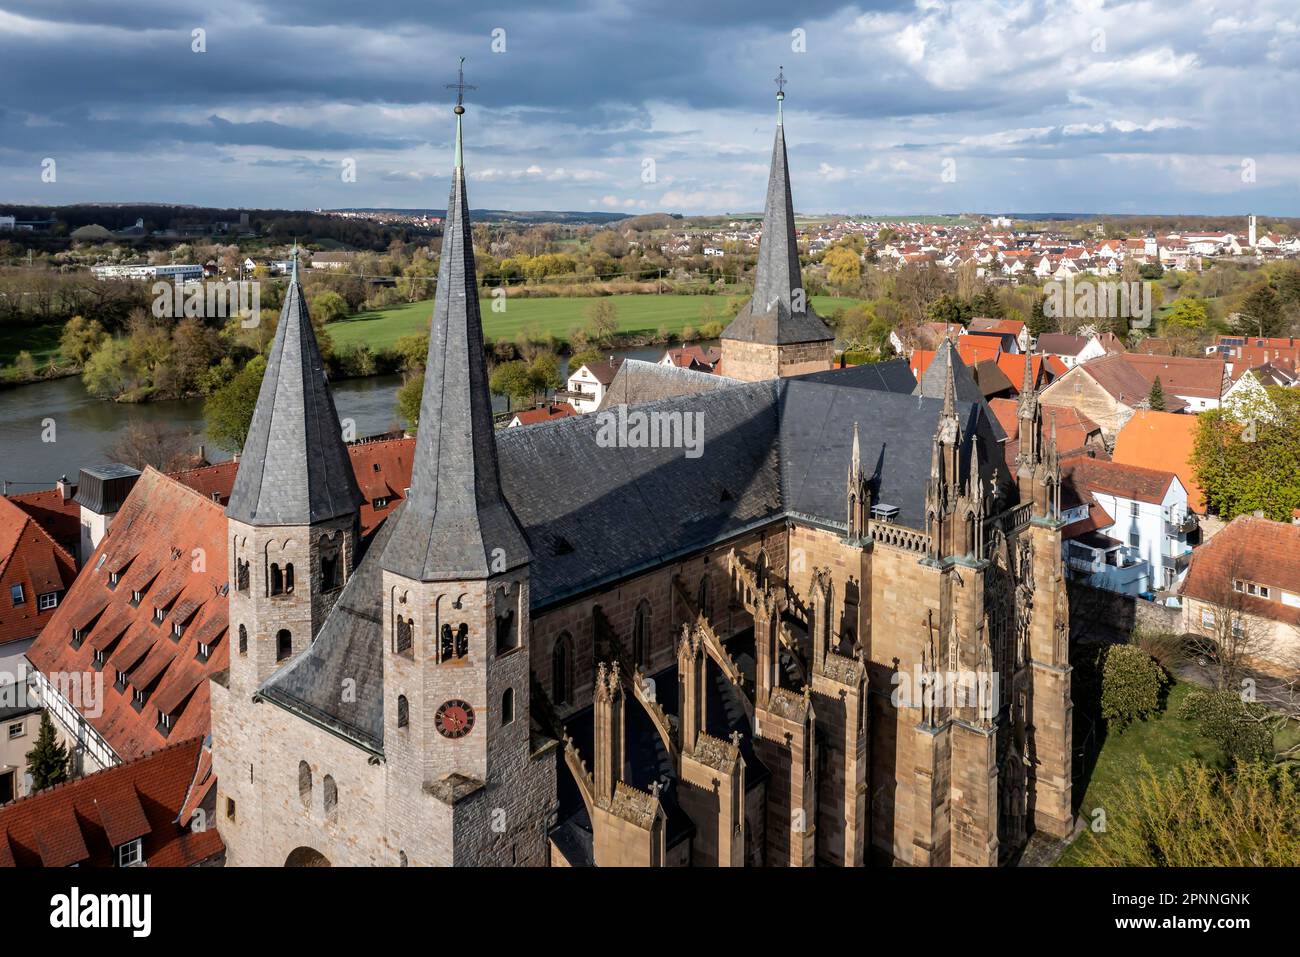 St. Peter's Collegiate Church, l'un des plus importants bâtiments gothiques d'Allemagne, vue extérieure, photo de drone, Bad Wimpfen Banque D'Images